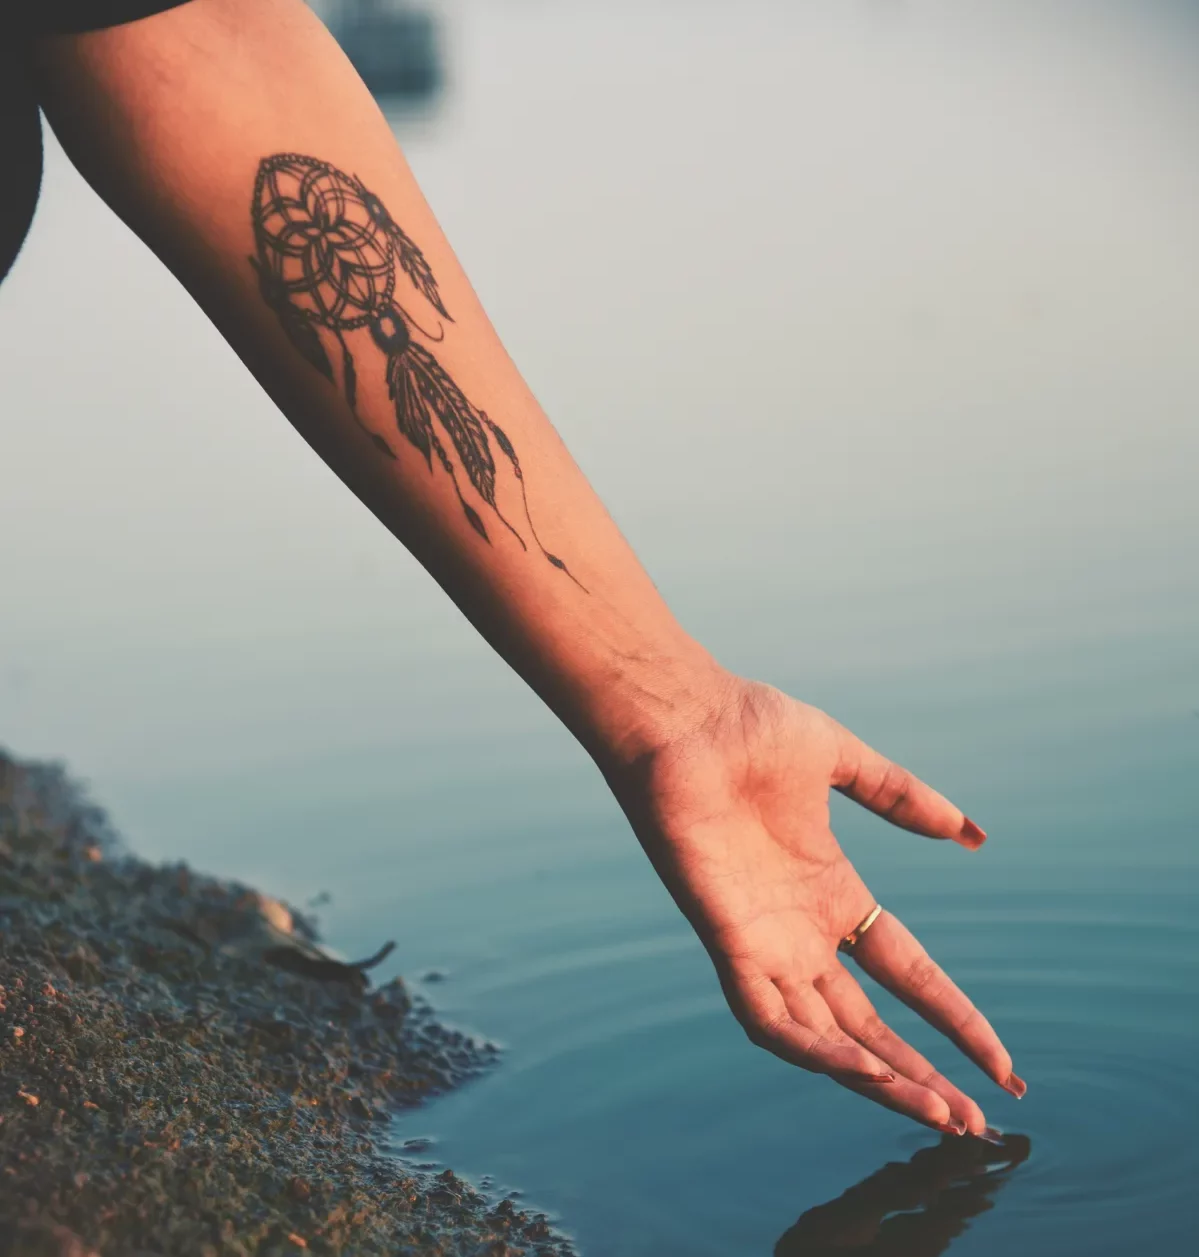 tatouage attrape reve protection et signification cachée contre les cauchemars